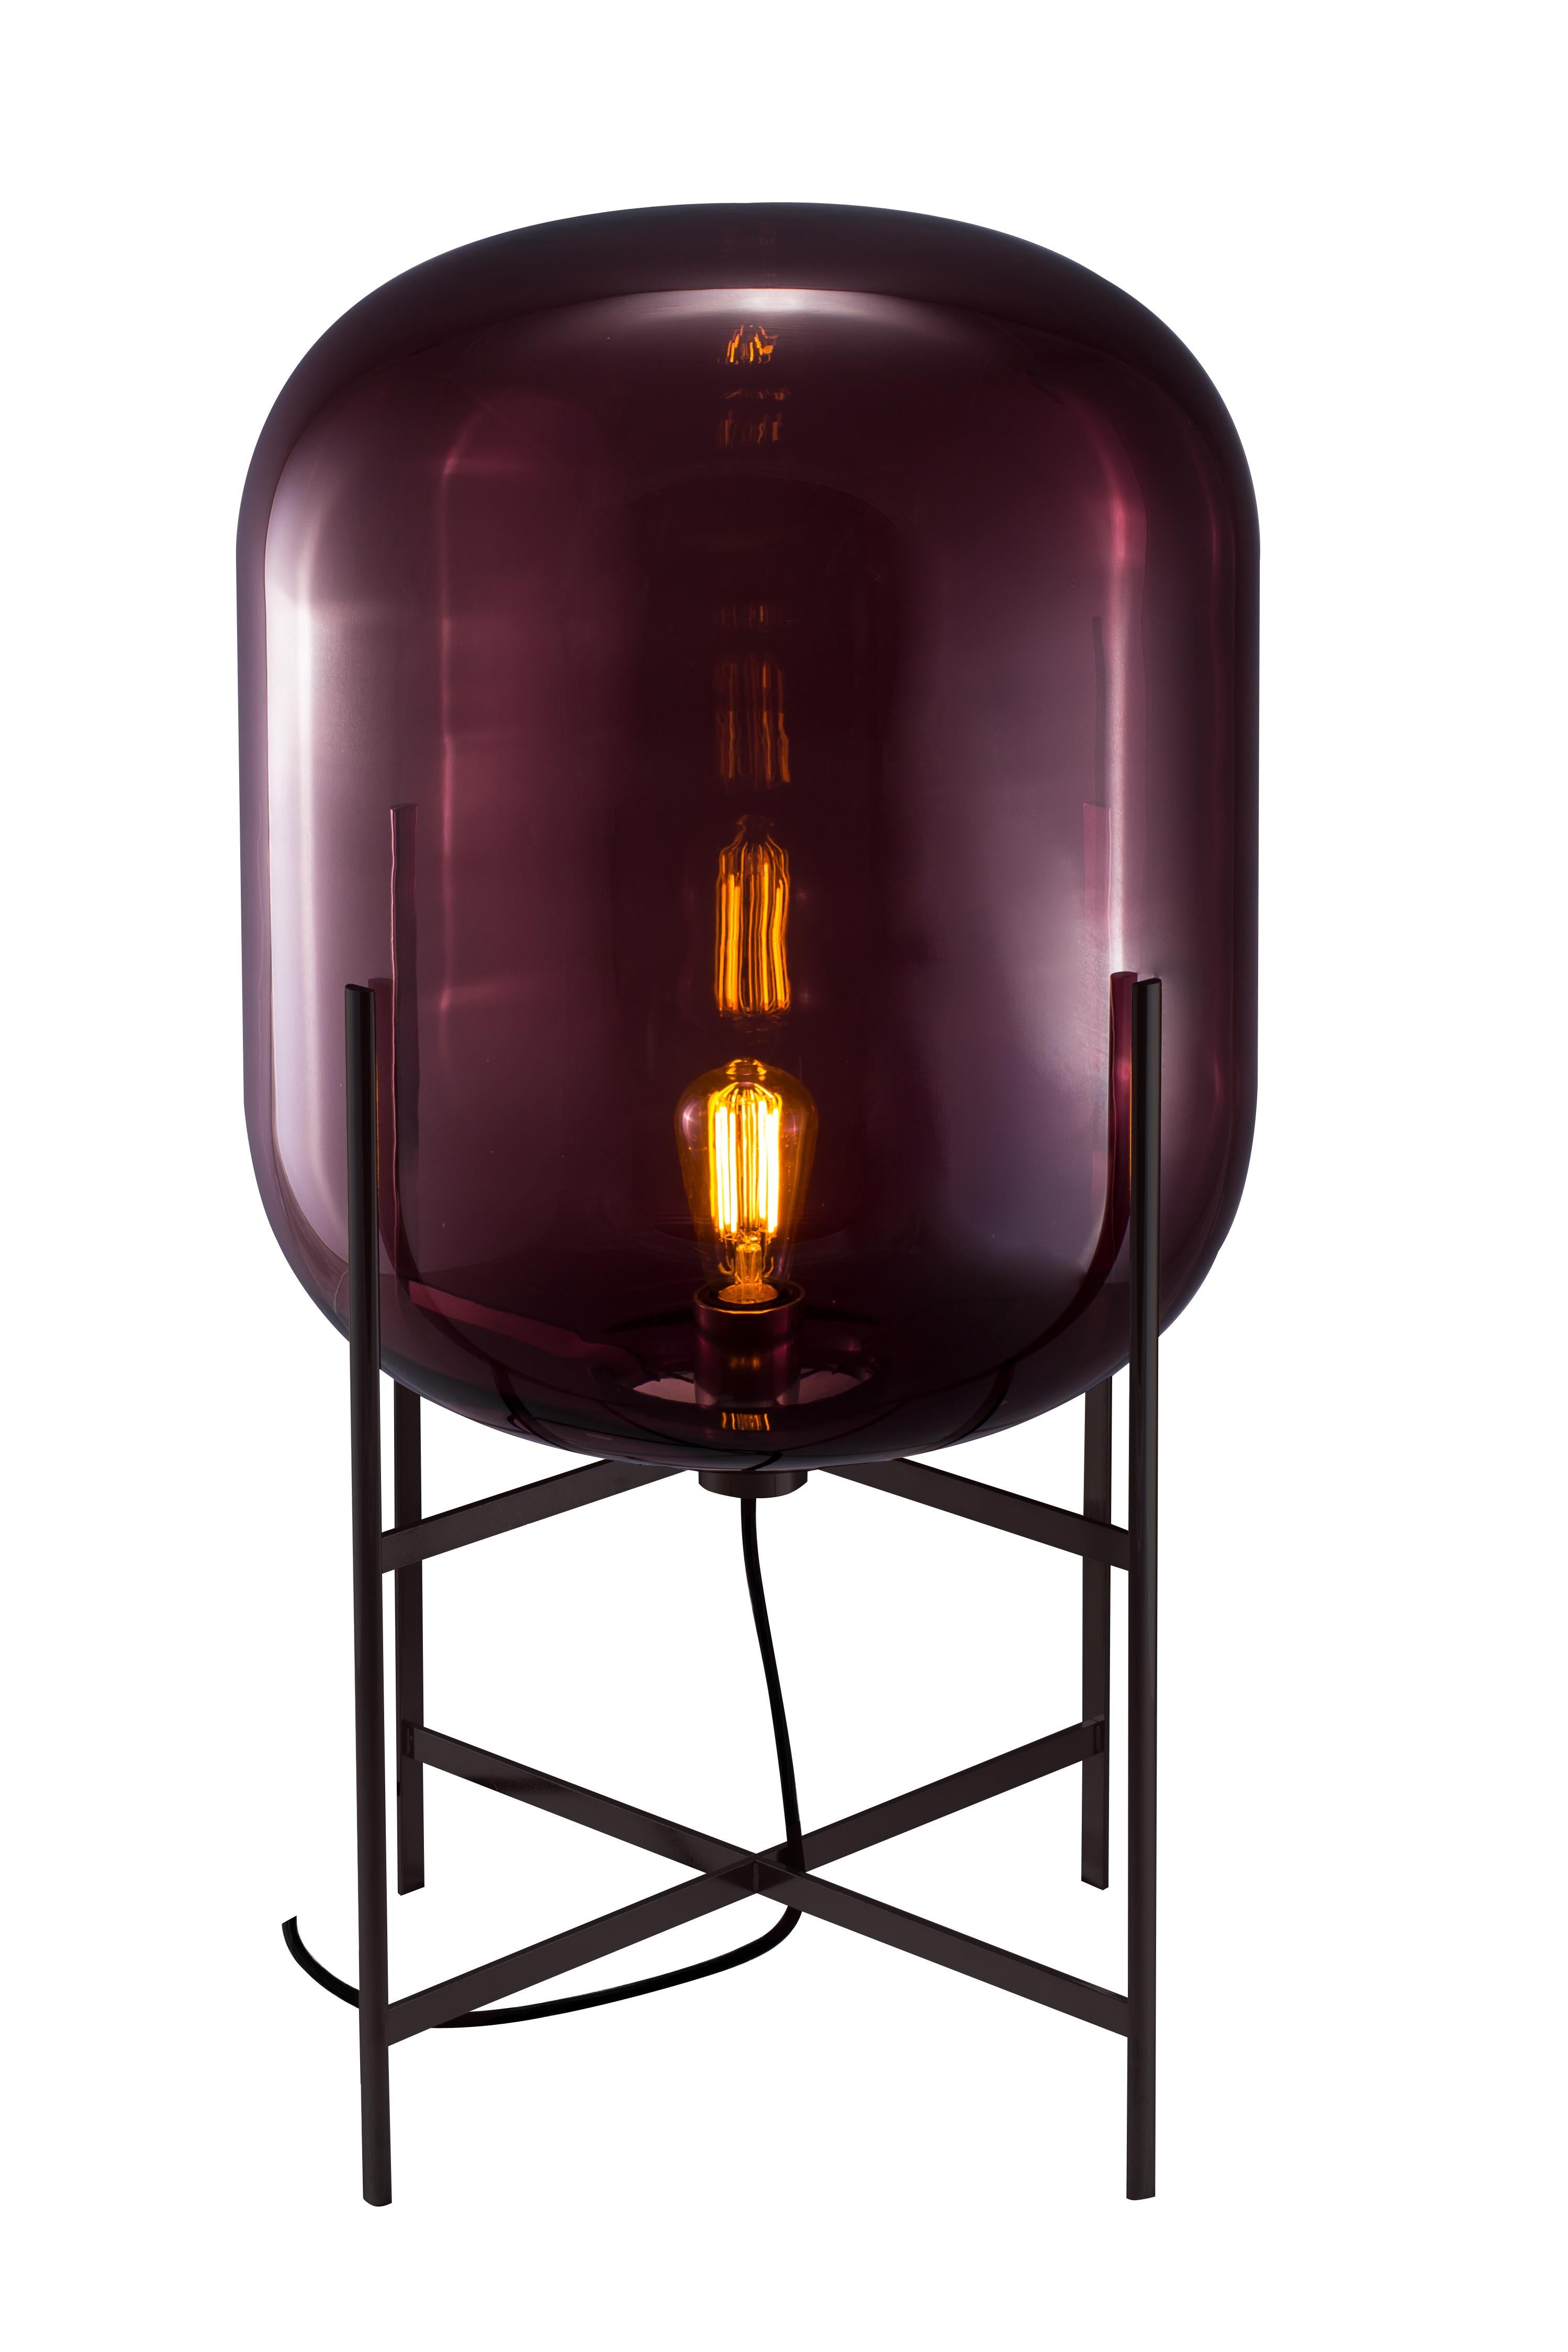 Oda Medium Aubergine Black Floor Lamp by Pulpo
Dimensions : D45 x H80 cm
MATERIAL : verre soufflé à la bouche coloré et acier.

Disponible également en différentes finitions.

Une base élancée épouse une forme bulbeuse. Un motif industriel adouci